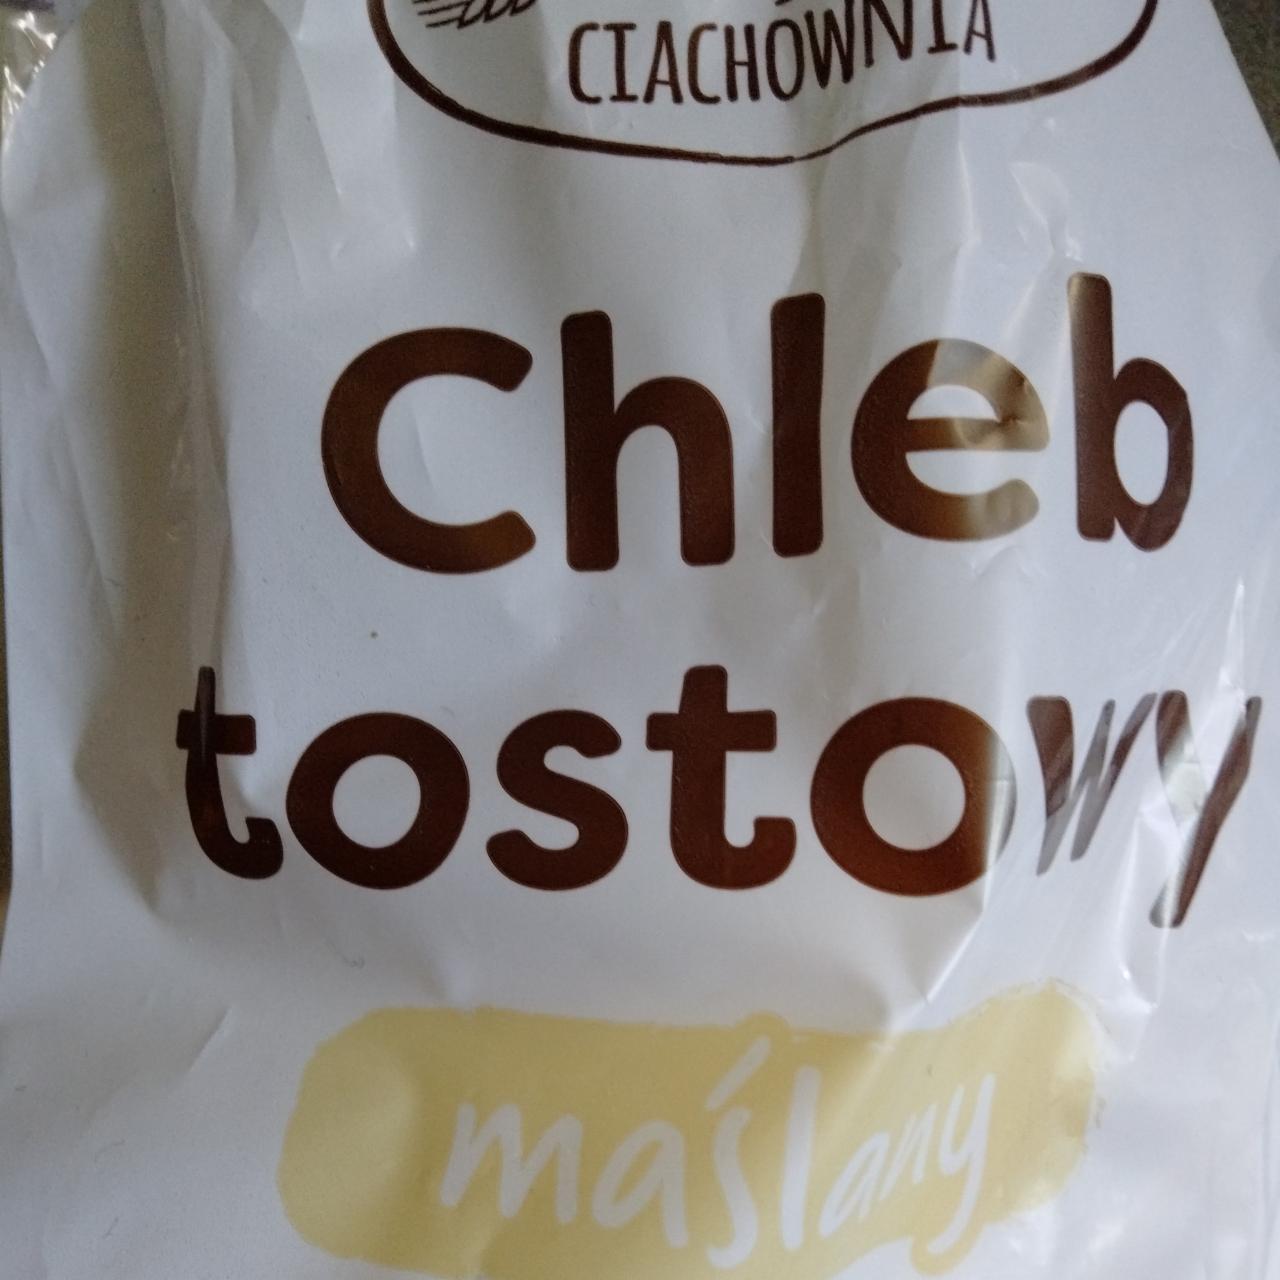 Zdjęcia - chleb tostowy maślany Ciachownia